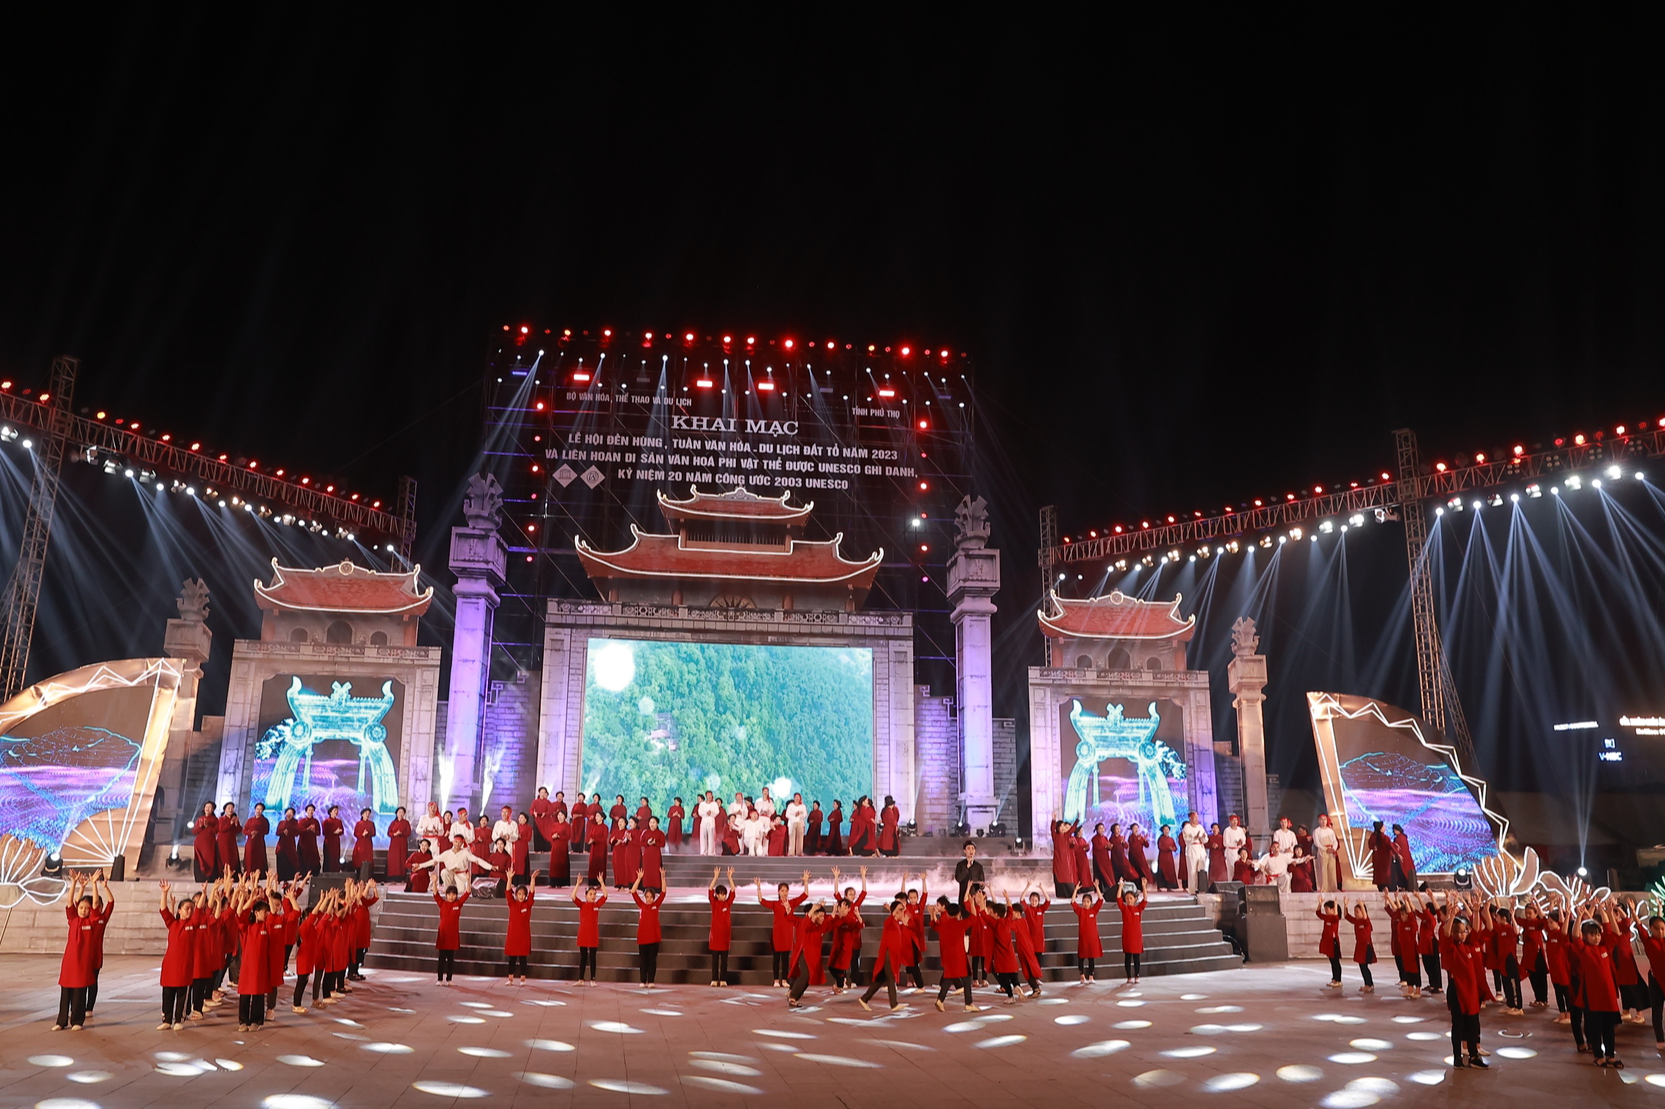 Bật mí kịch bản chương trình nghệ thuật Khai mạc Lễ hội Đền Hùng 2023 trước giờ G - Ảnh 1.